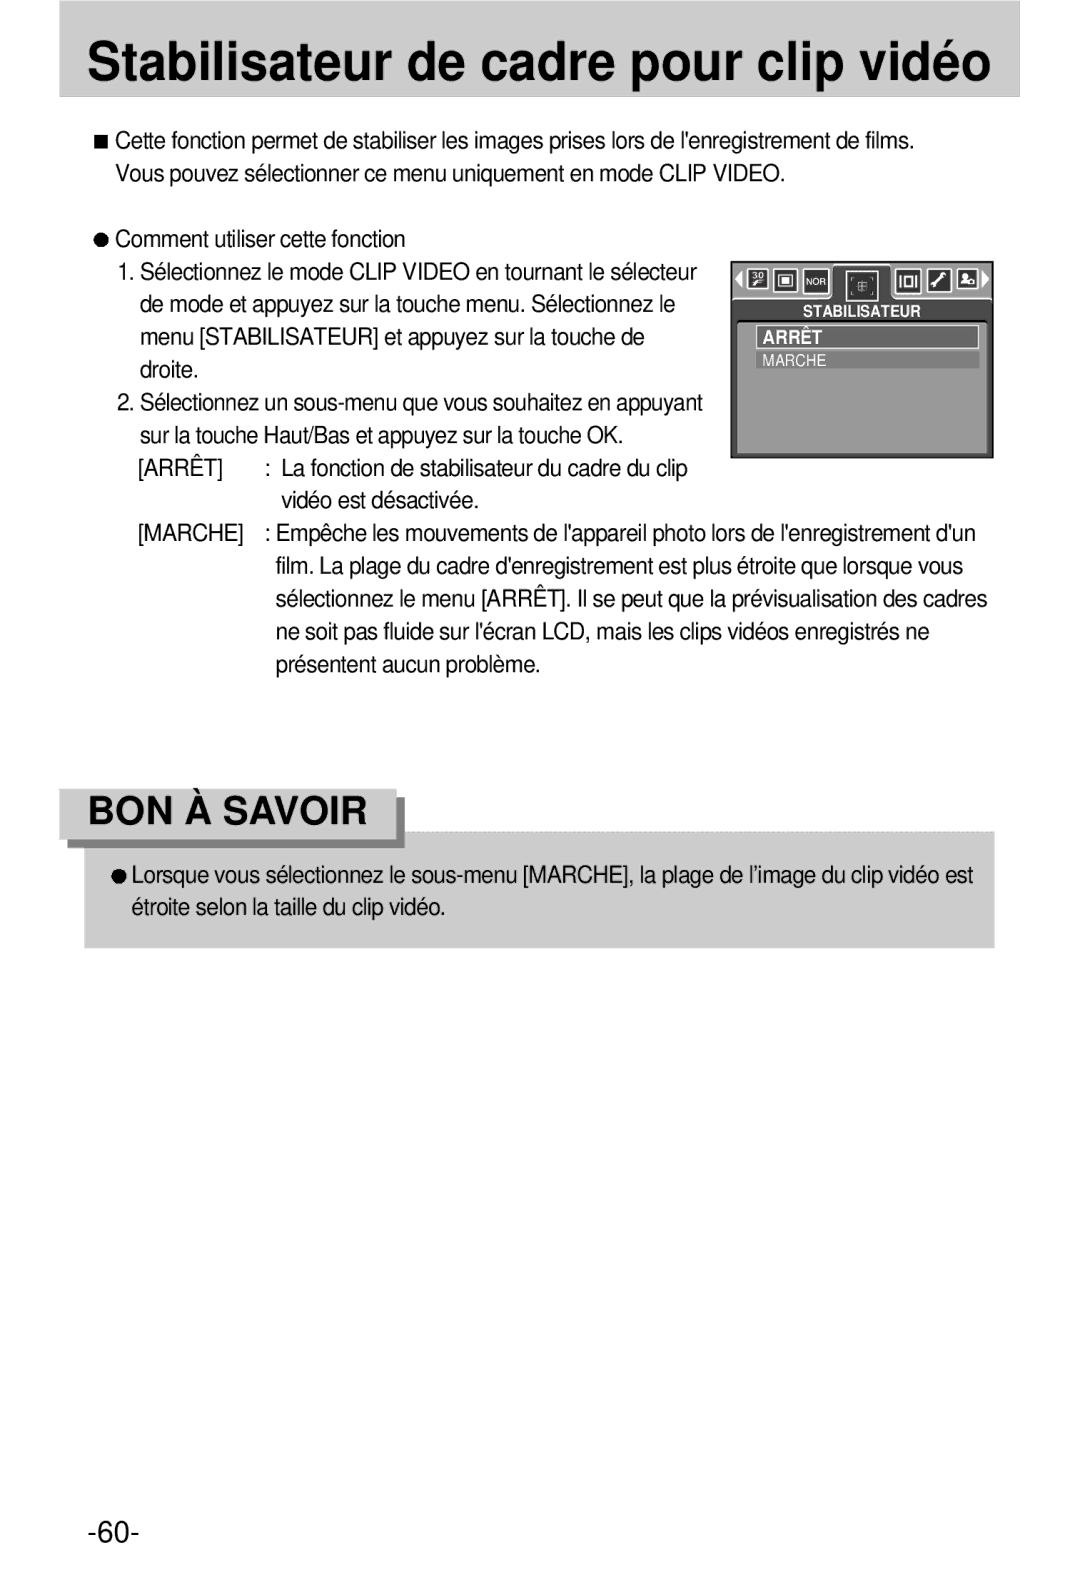 Samsung EC-V800ZSBA/FR manual Stabilisateur de cadre pour clip vidéo, Arrêt 